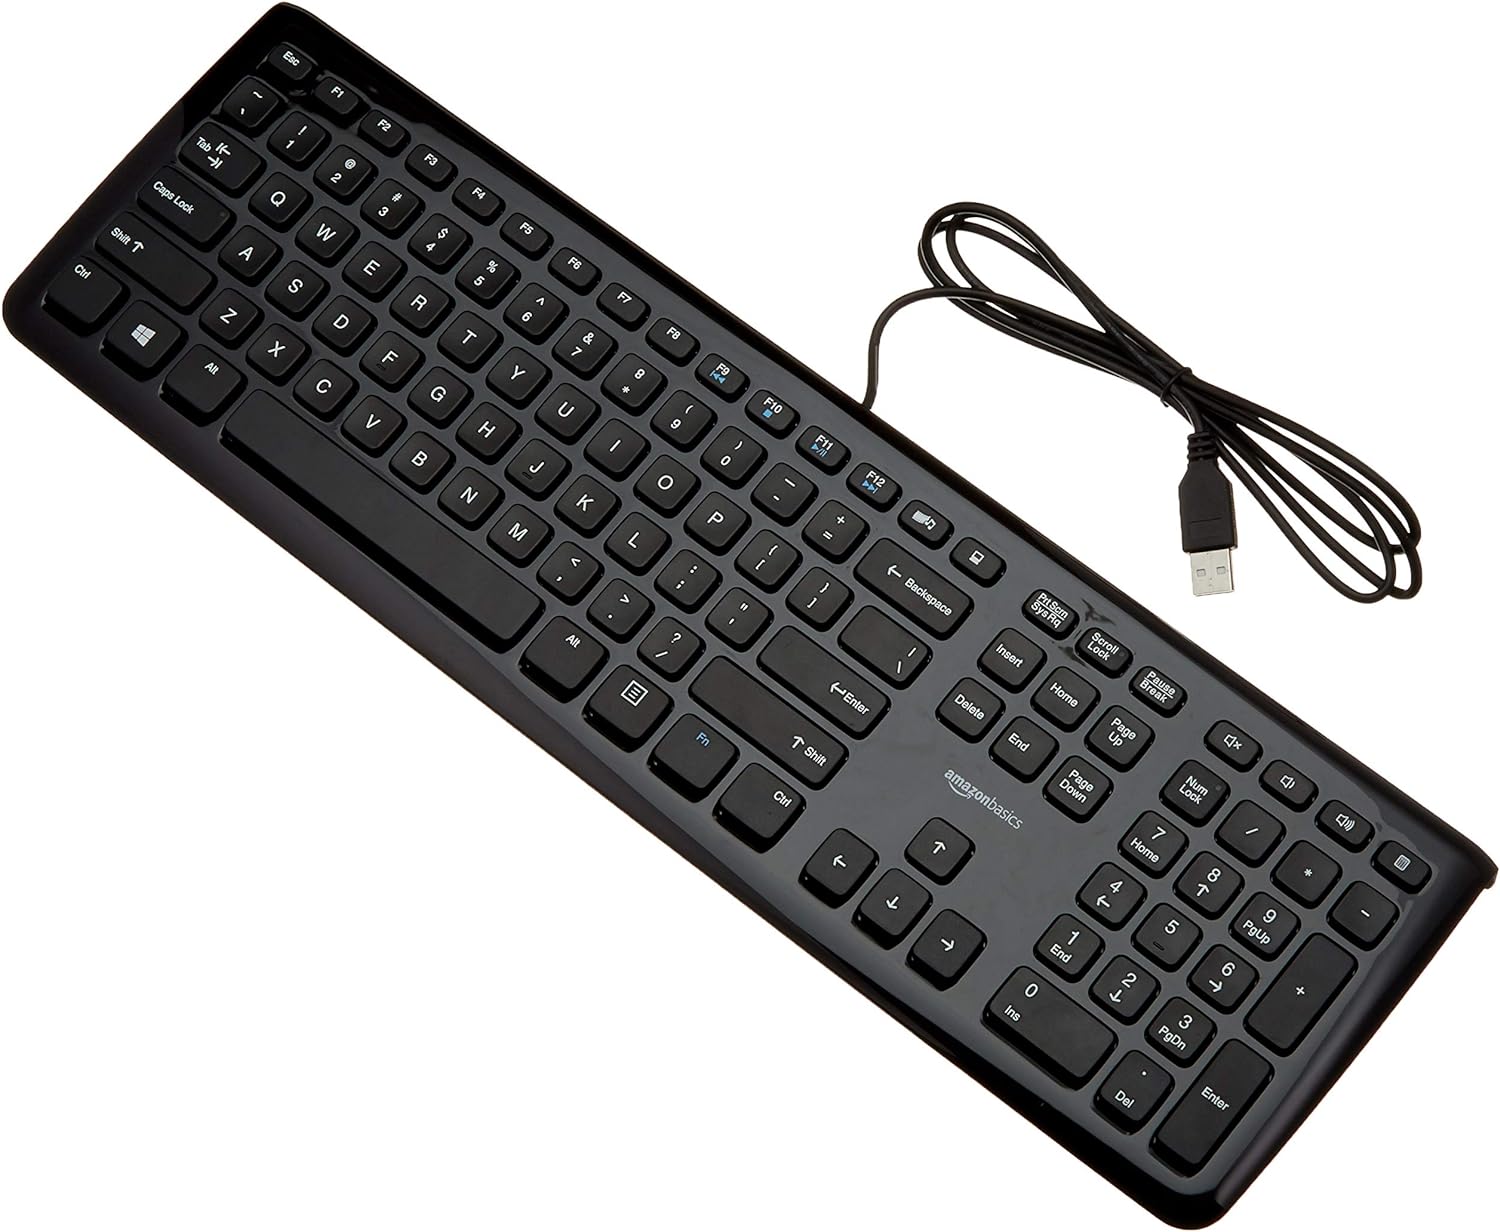  Amazon Basics Wired USB Keyboard A grade in Sri Lanka | ido.lk